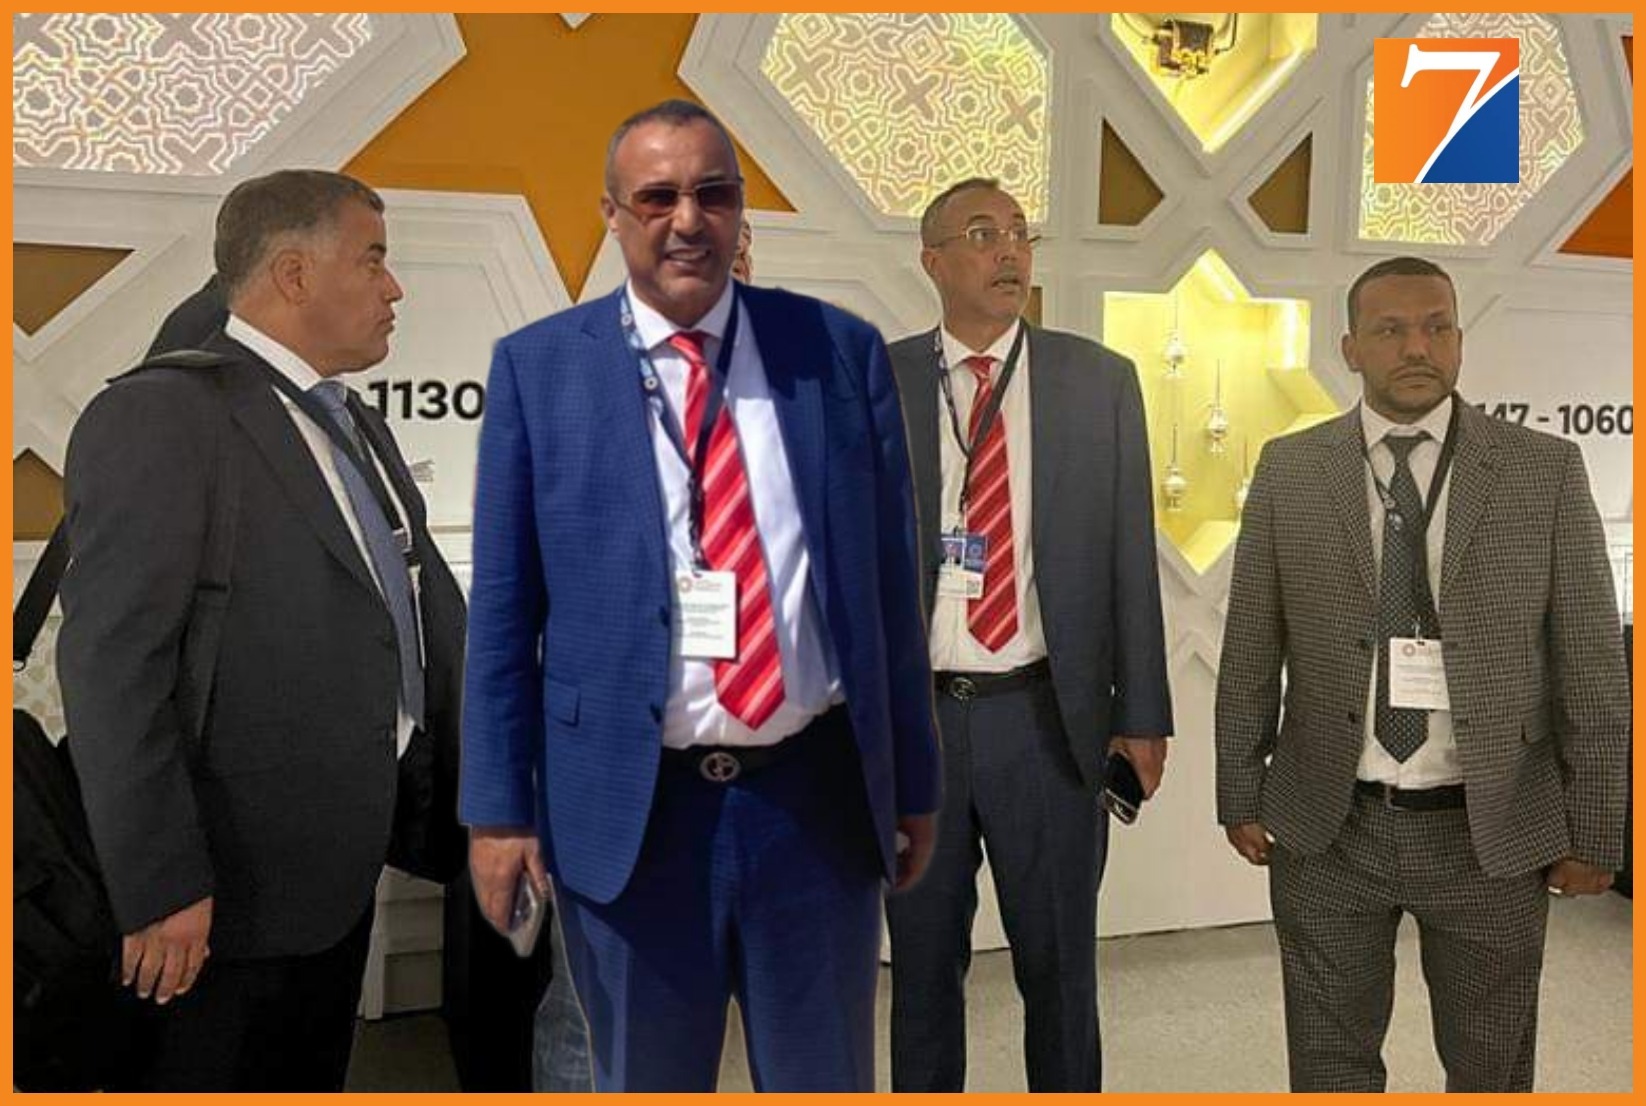 رئيس الجهة الخطاط ينجا يزور رواق المغرب المقام ضمن الفضاء المخصص لاحتضان أشغال الاجتماعات السنوية لصندوق النقد الدولي والبنك الدولي بمراكش.